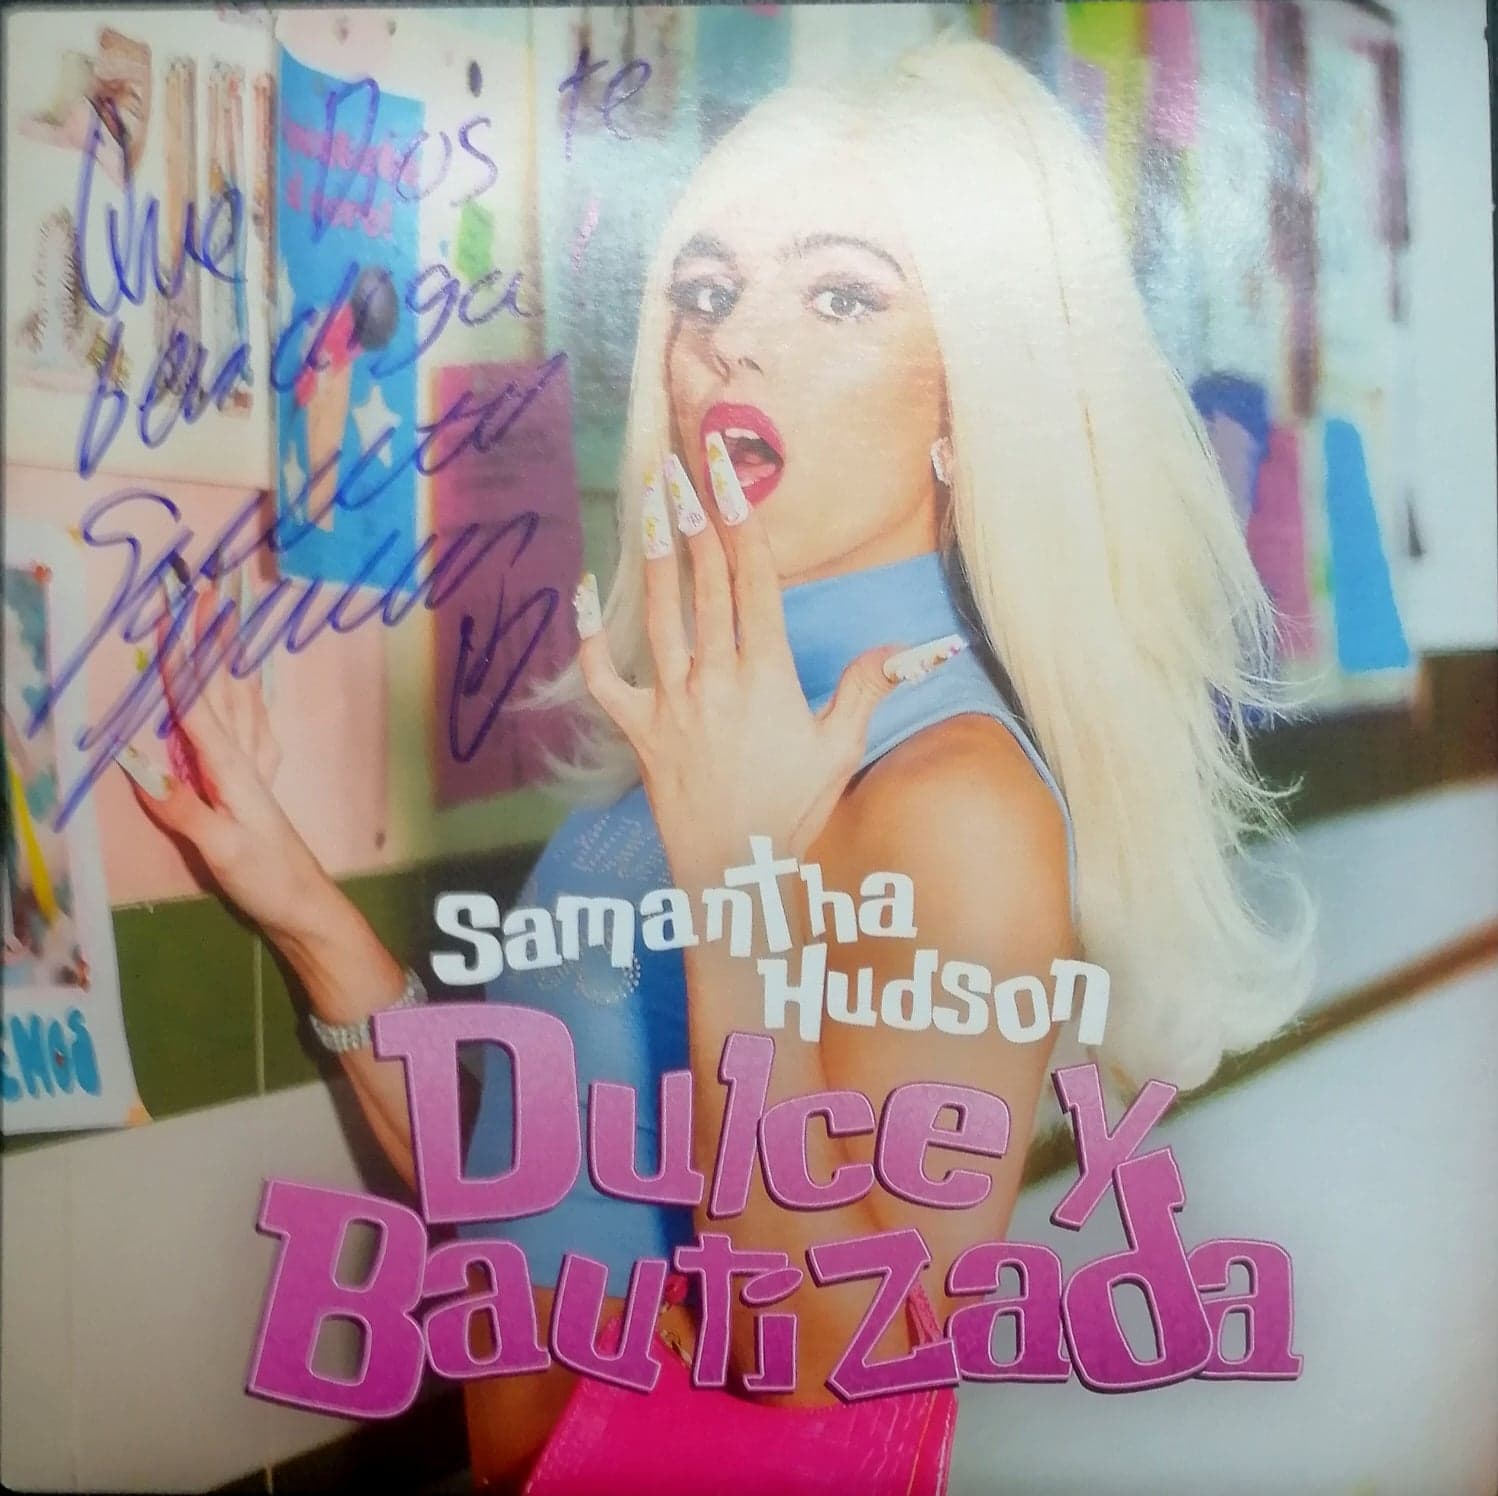 Samantha "Dulce y Bautizada" Ed. Firmada 7"